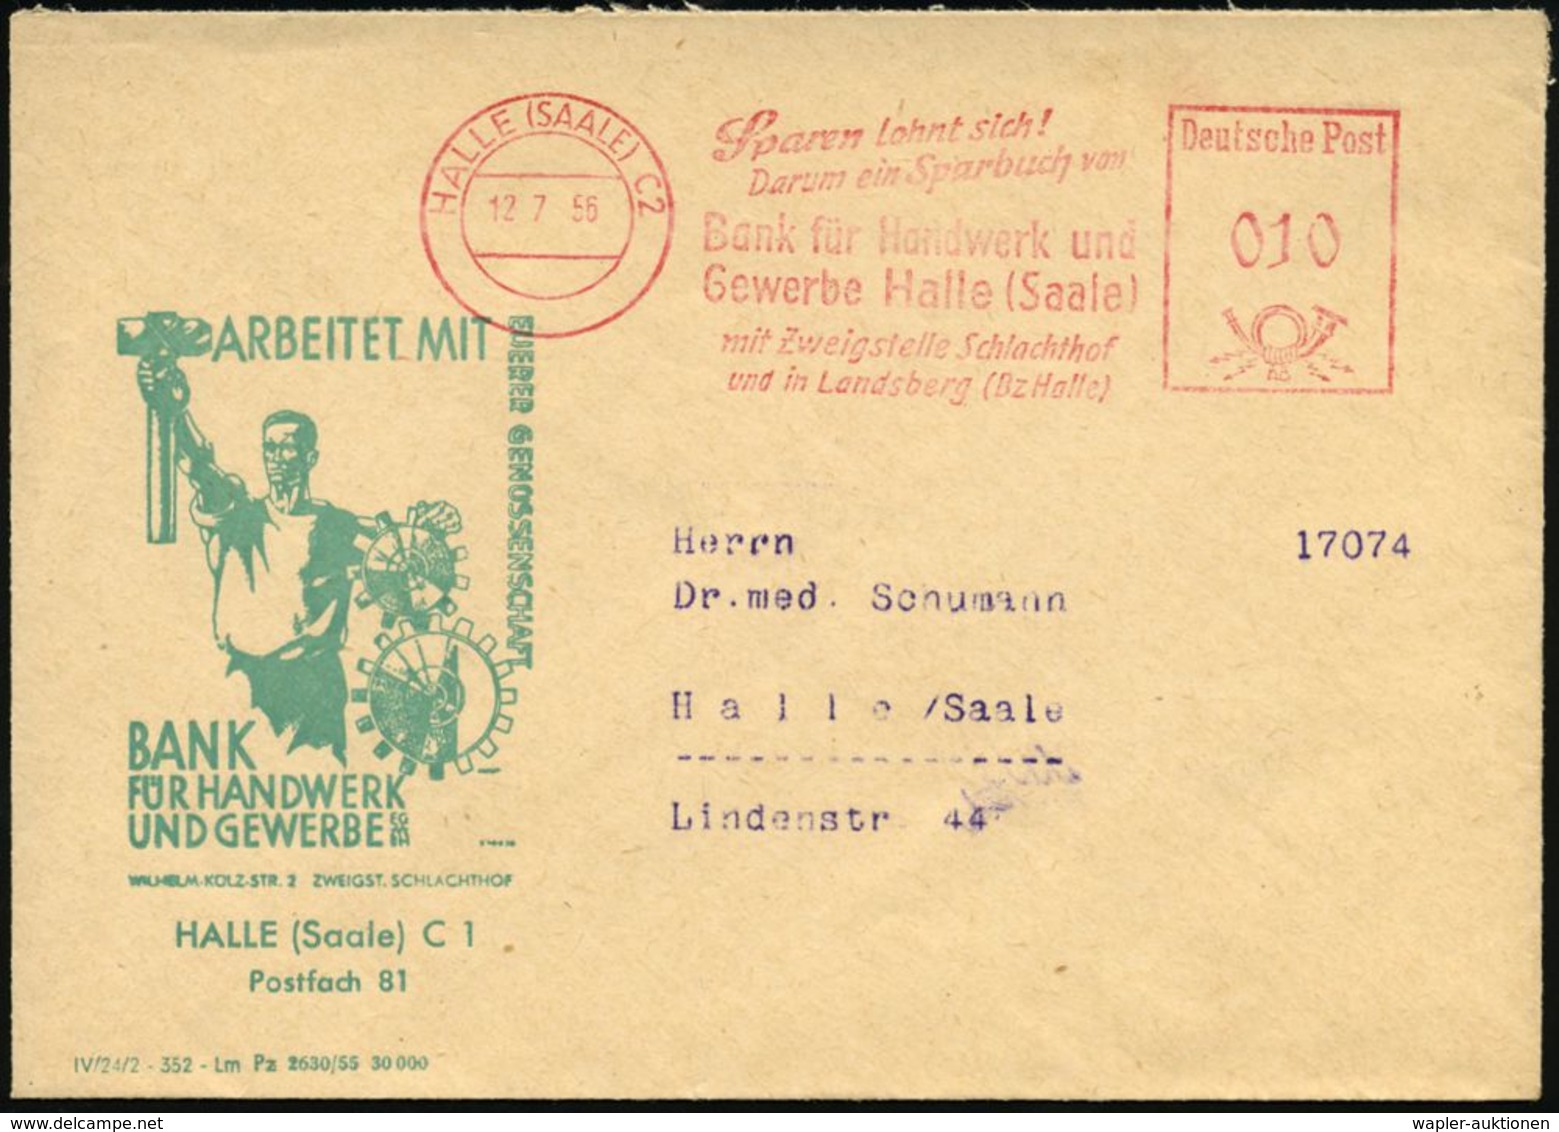 HALLE (SAALE) C 2/ Sparen Lohnt Sich!/ ..Bank Für Handwerk U./ Gewerbe../ Mit Zweigstelle Schlacht-hof.. 1956 (4.8.) AFS - Autres & Non Classés